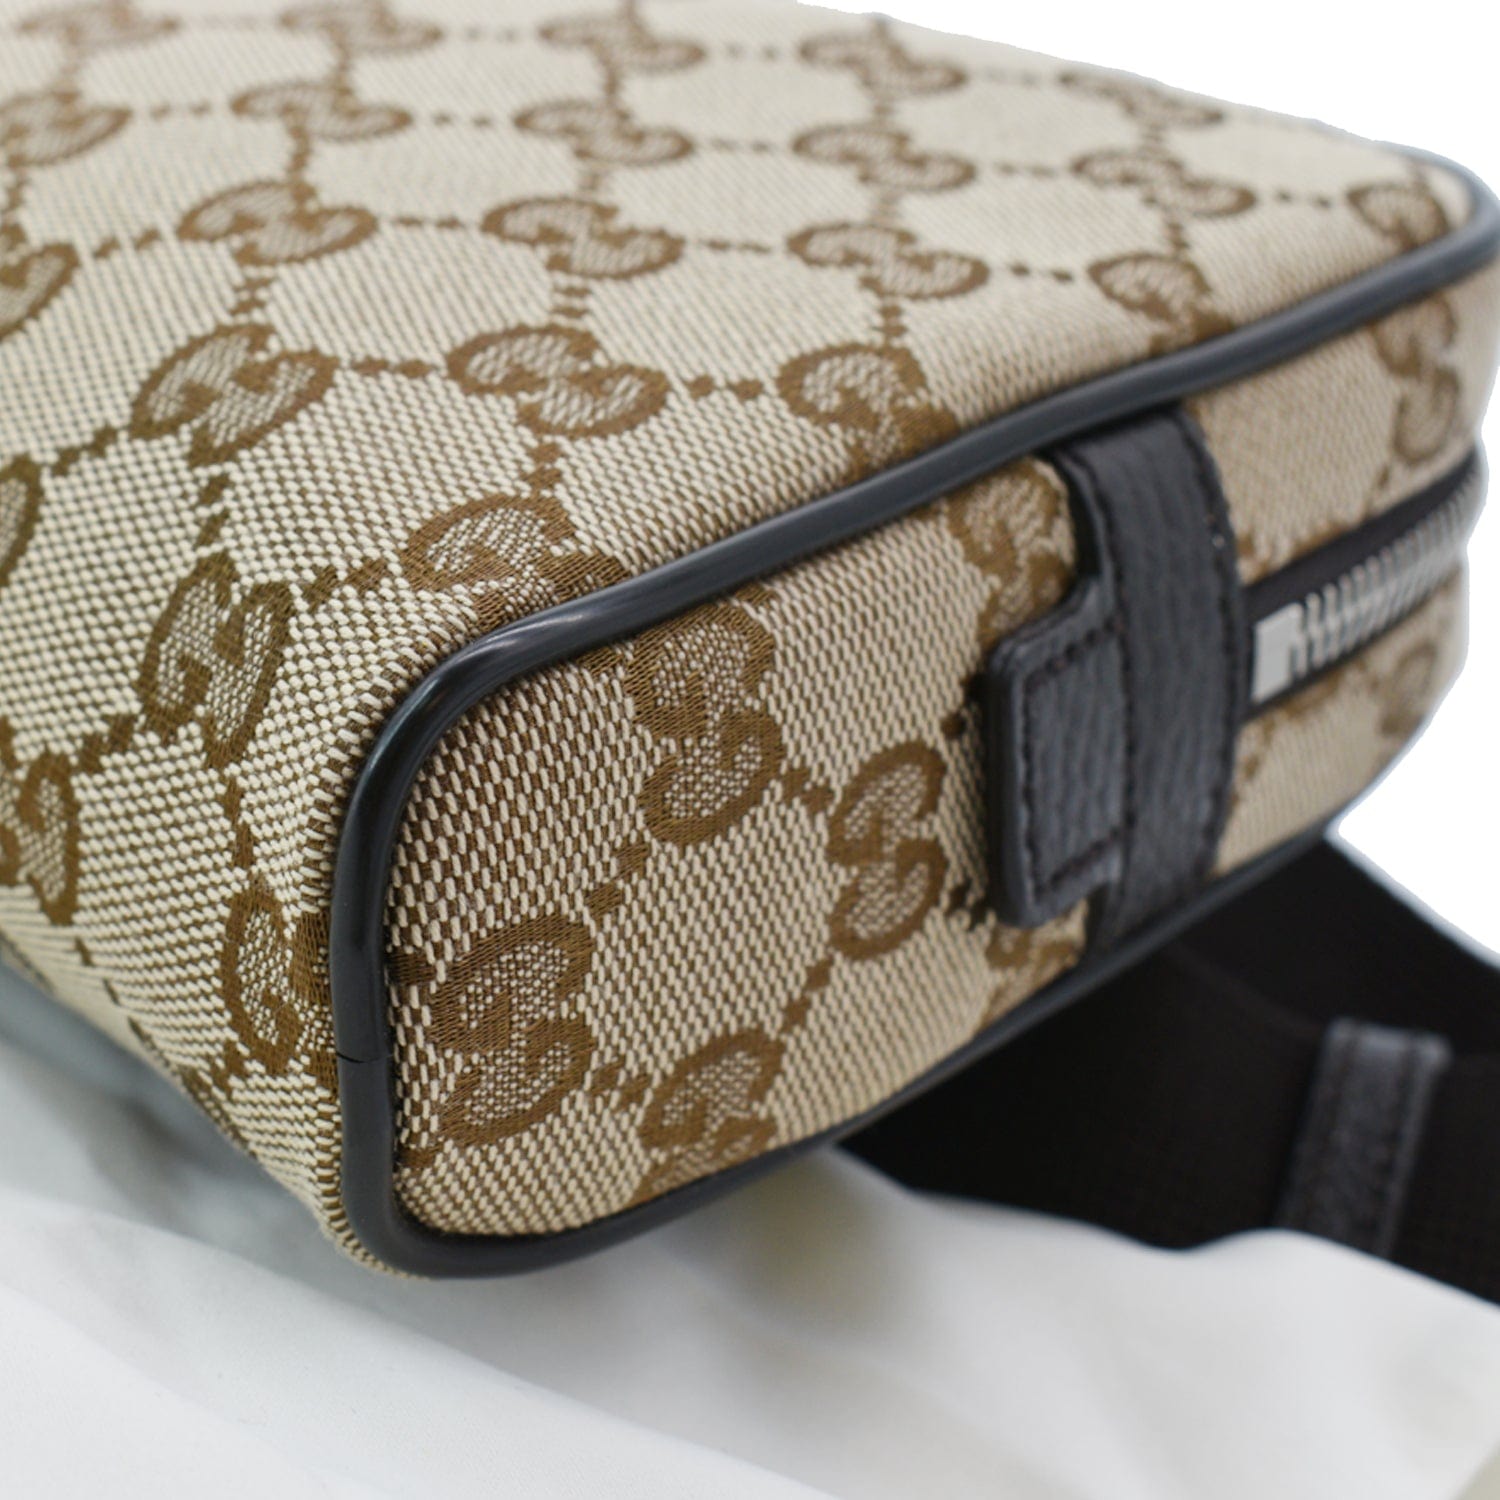 Gucci Original GG Guccissima Canvas Beige Belt Bag 449174 – ZAK BAGS ©️